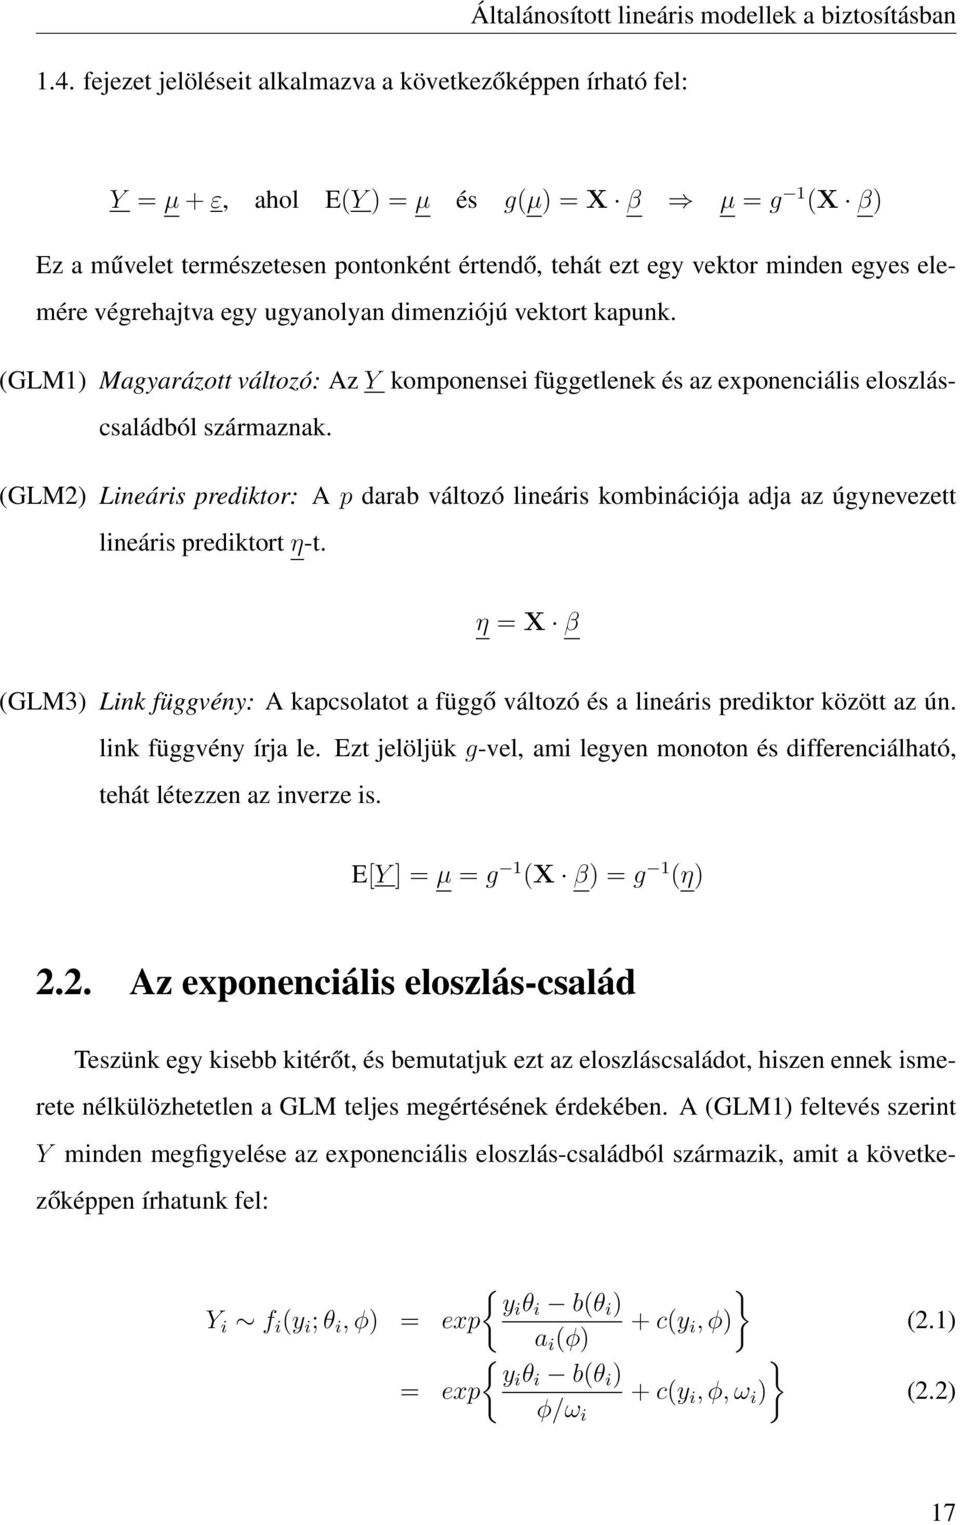 (GLM1) Magyarázott változó: Az Y komponensei függetlenek és az exponenciális eloszláscsaládból származnak.